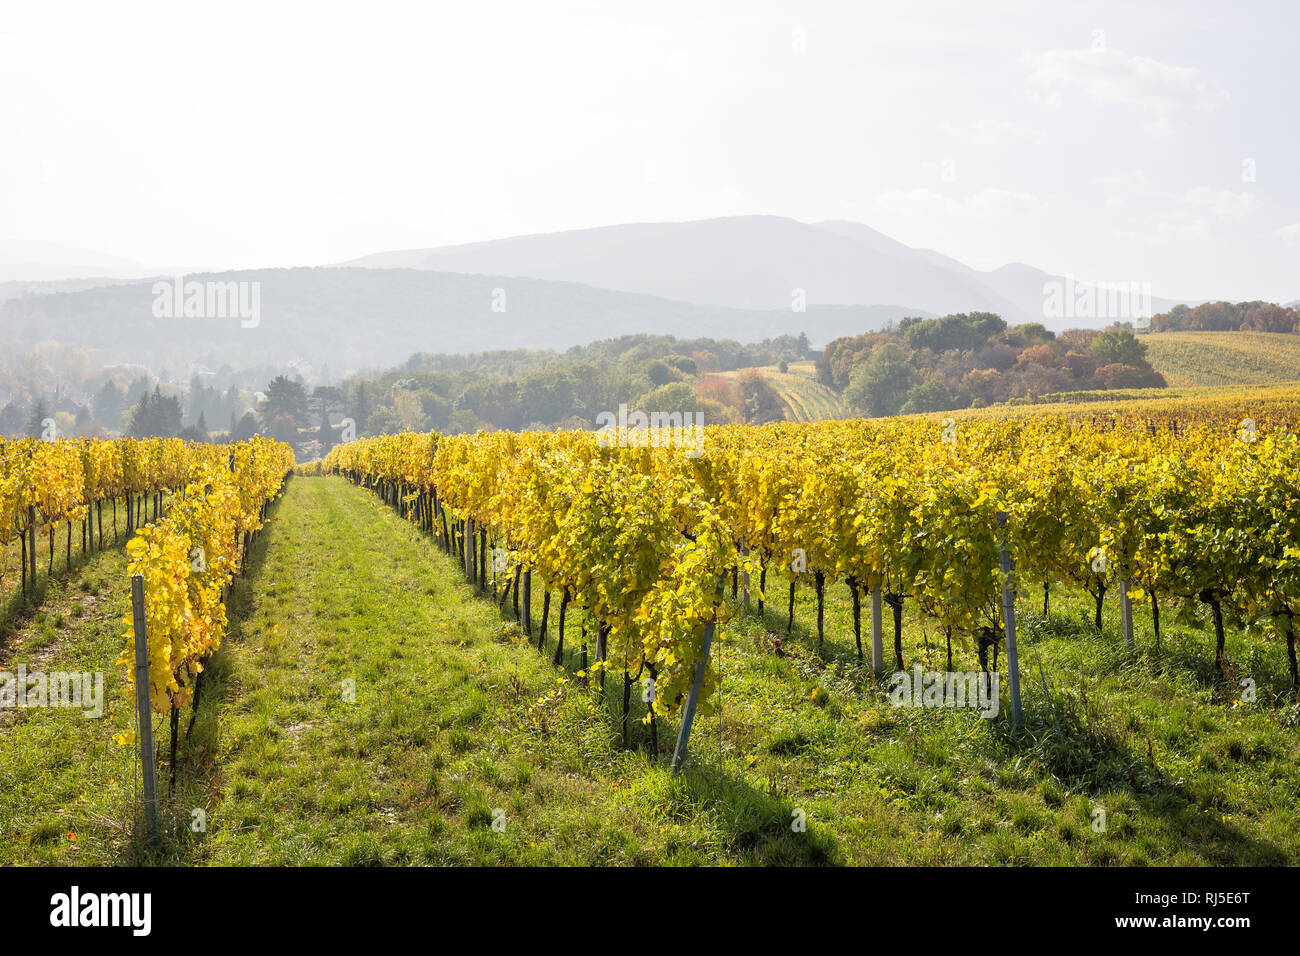 Blick über die herbstlich verfärbten Weingärten am Maurer Berg, Wien, Österreich, Europa, Stock Photo